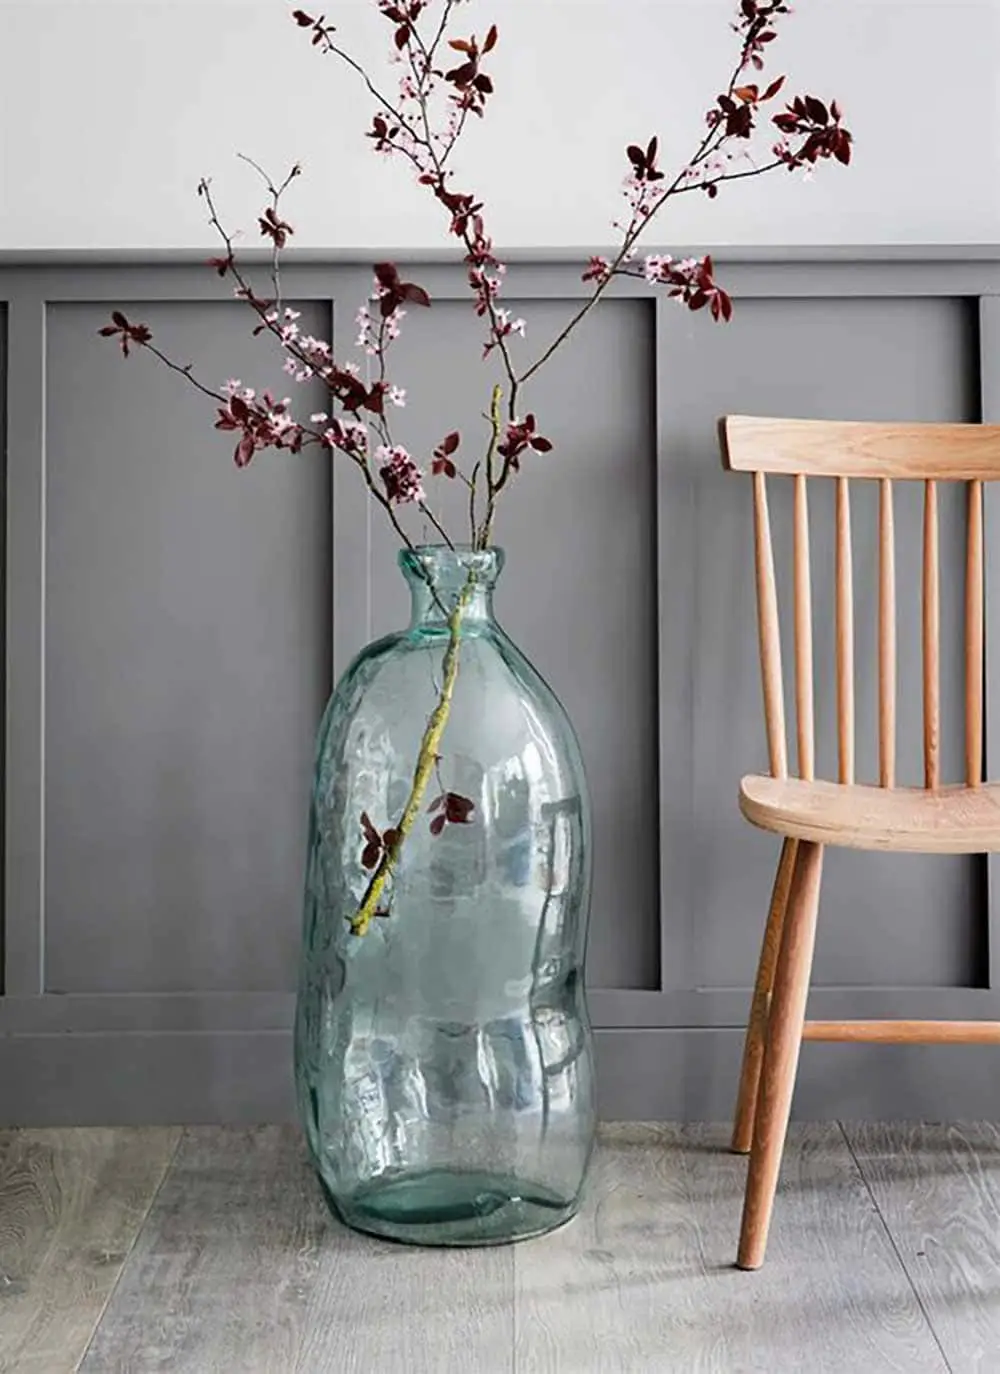 Grand vase aux formes imparfaites avec branche décorative - Decorazine.fr